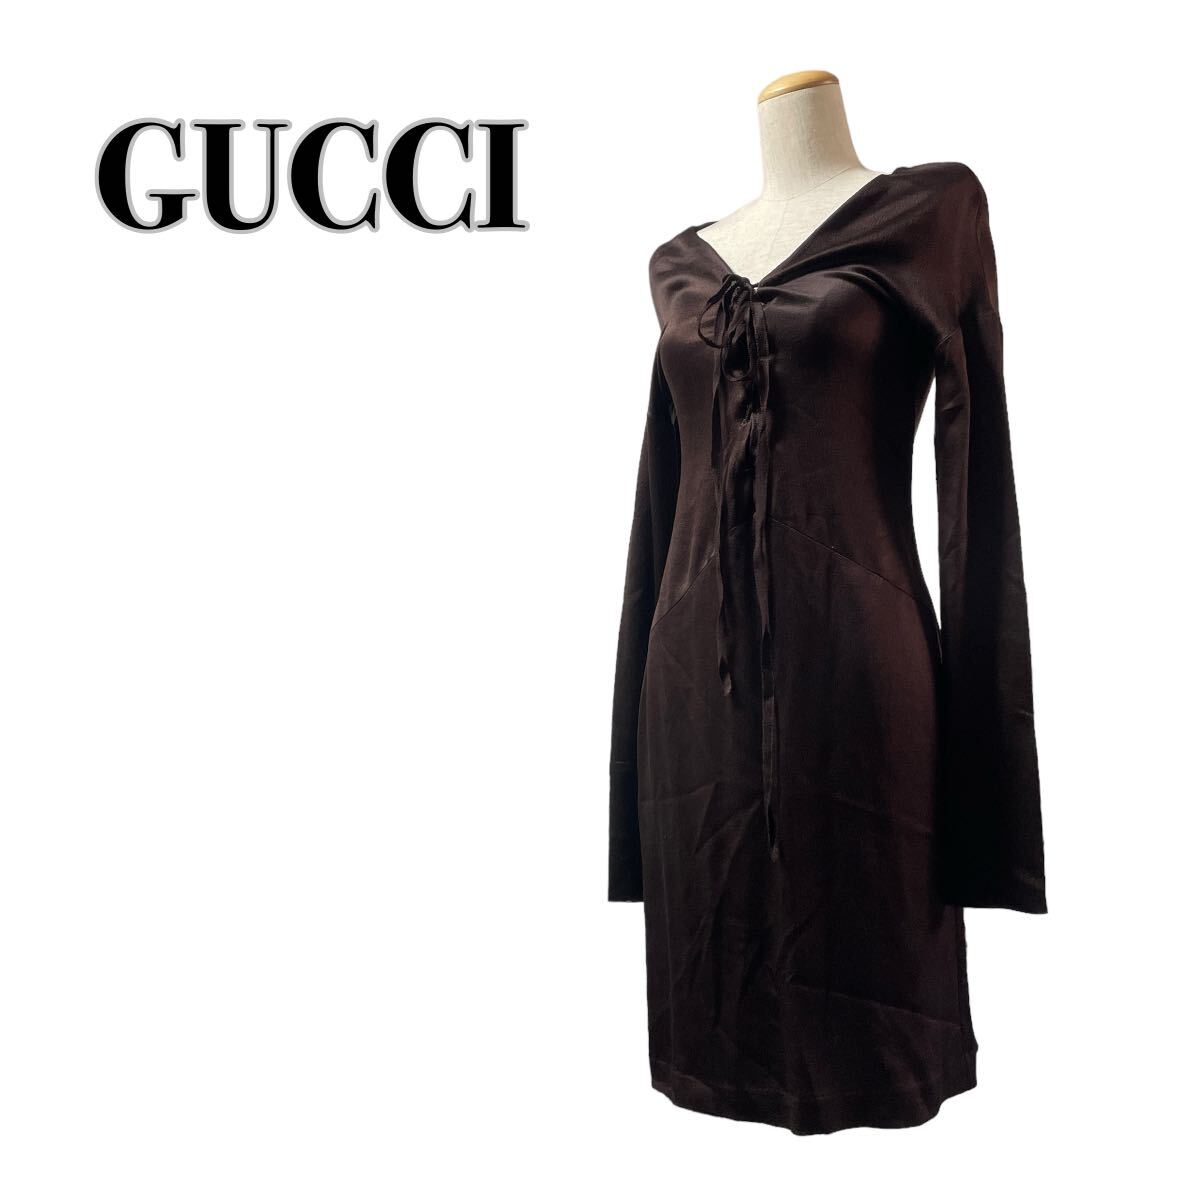 GUCCI グッチ シルク100% 長袖ワンピース 茶 ブラウン リボン ドレス イタリア製 40 Lの画像1